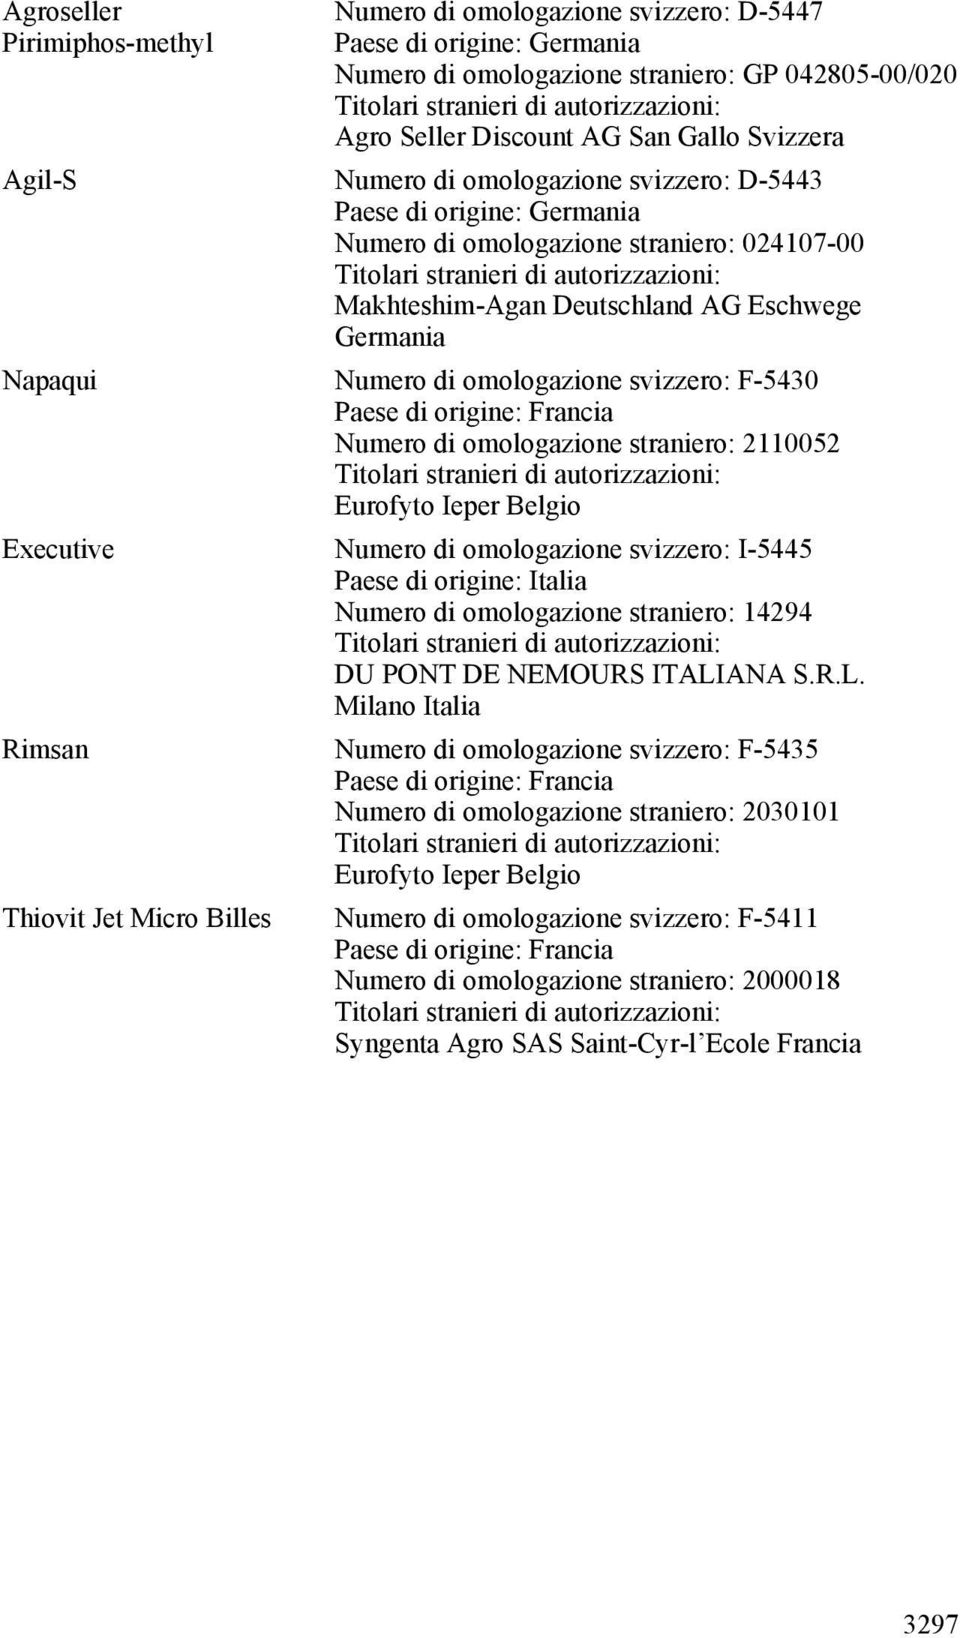 Numero di omologazione svizzero: I-5445 Numero di omologazione straniero: 14294 DU PONT DE NEMOURS ITALI